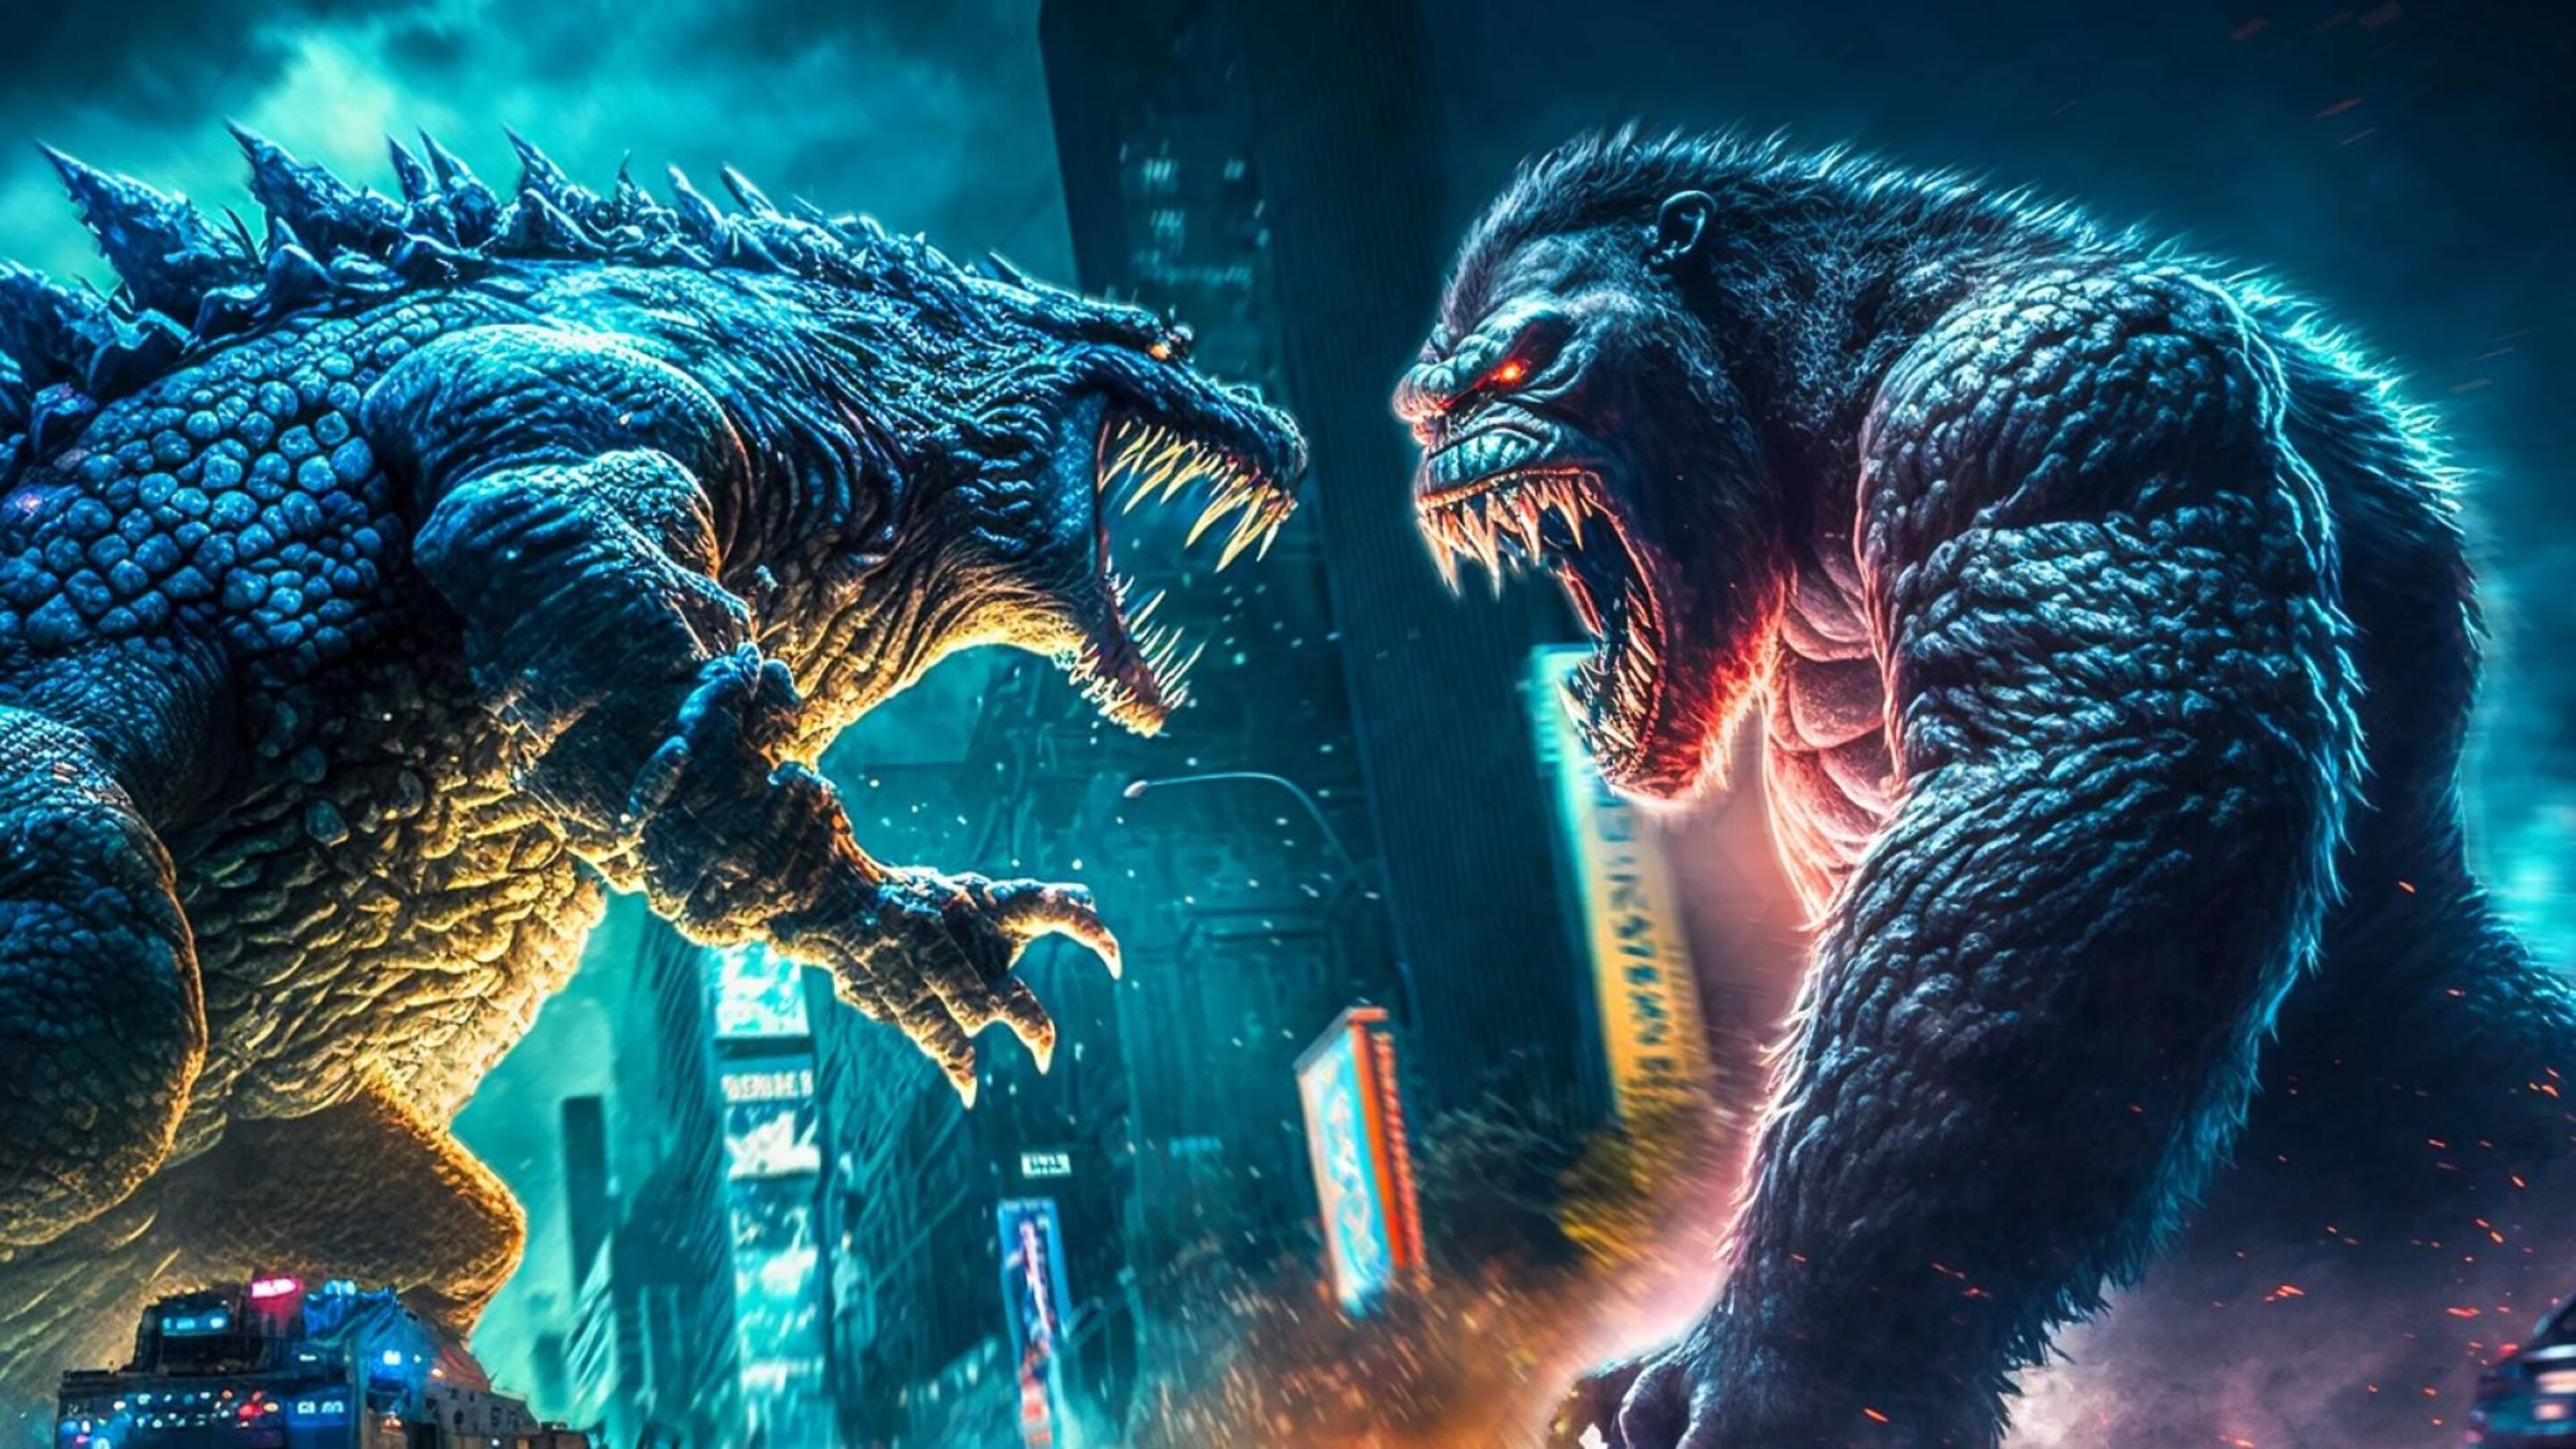 Kong se monta encima de Godzilla en este nuevo clip loco de Godzilla x Kong: The New Empire, la bestial película de los kaiju